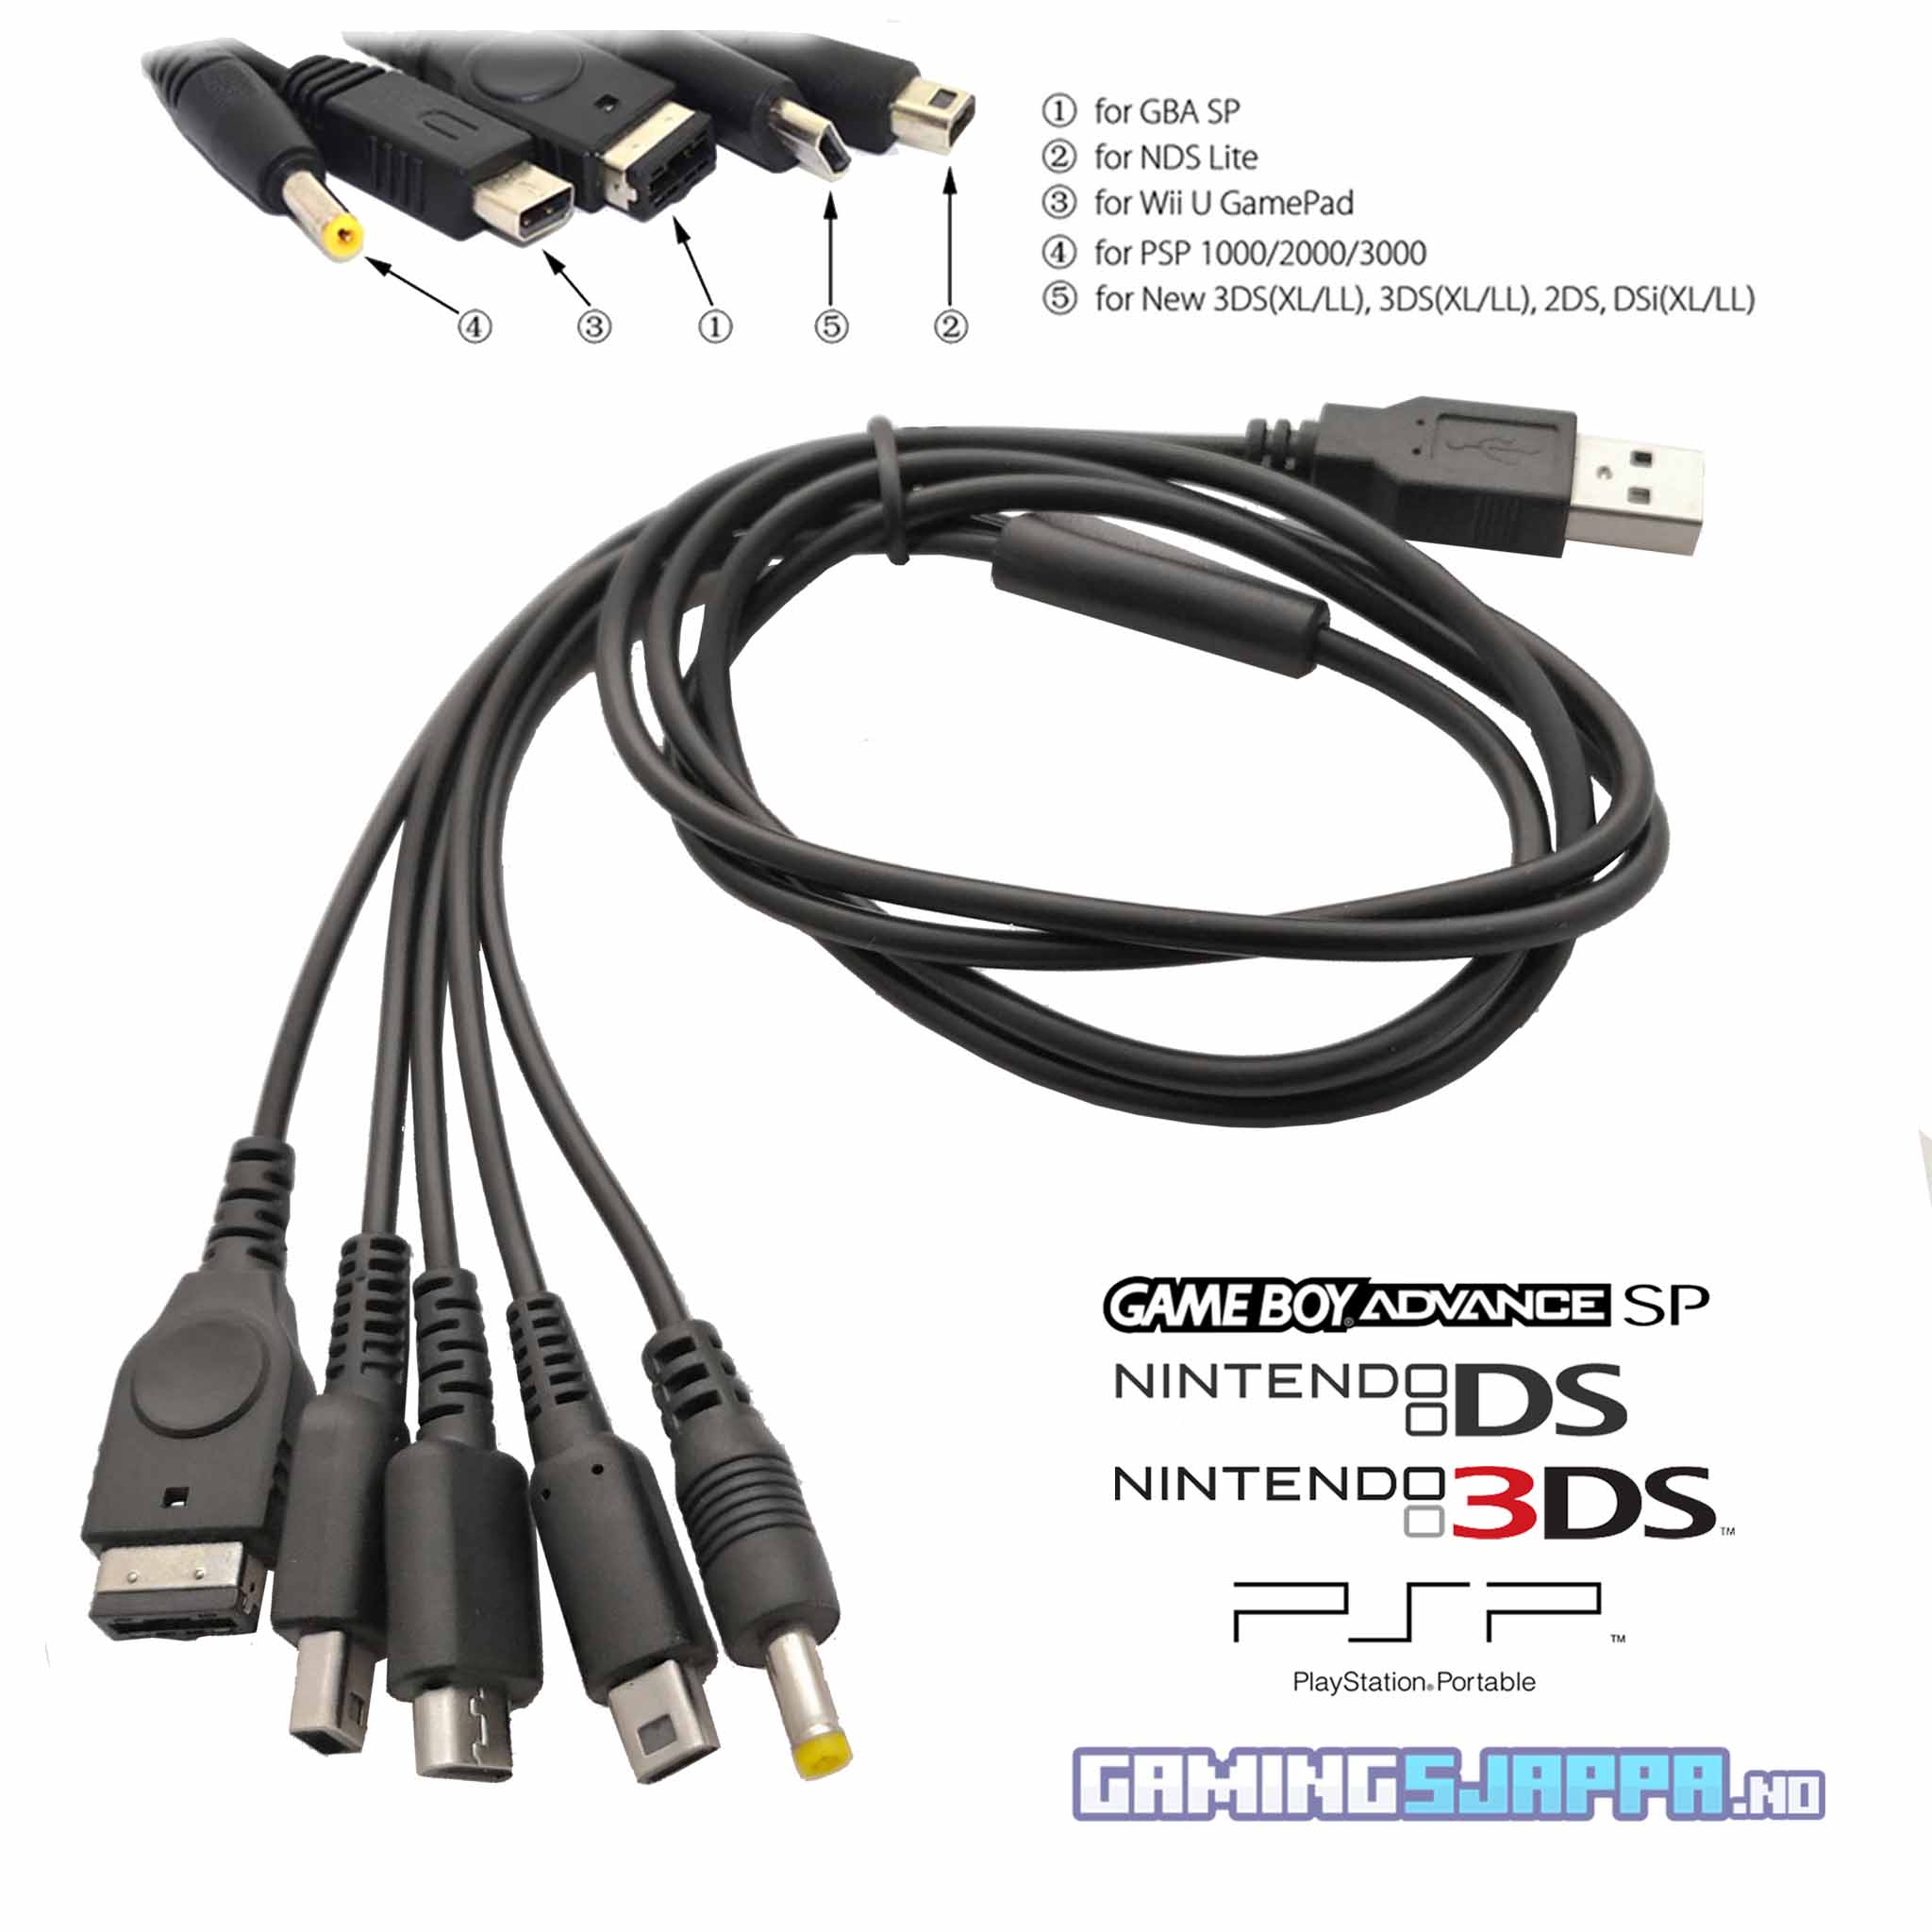 USB-multiladekabel til GBA, DS, XL og PSP-konsoller (tredjepart) - Gamingsjappa.no